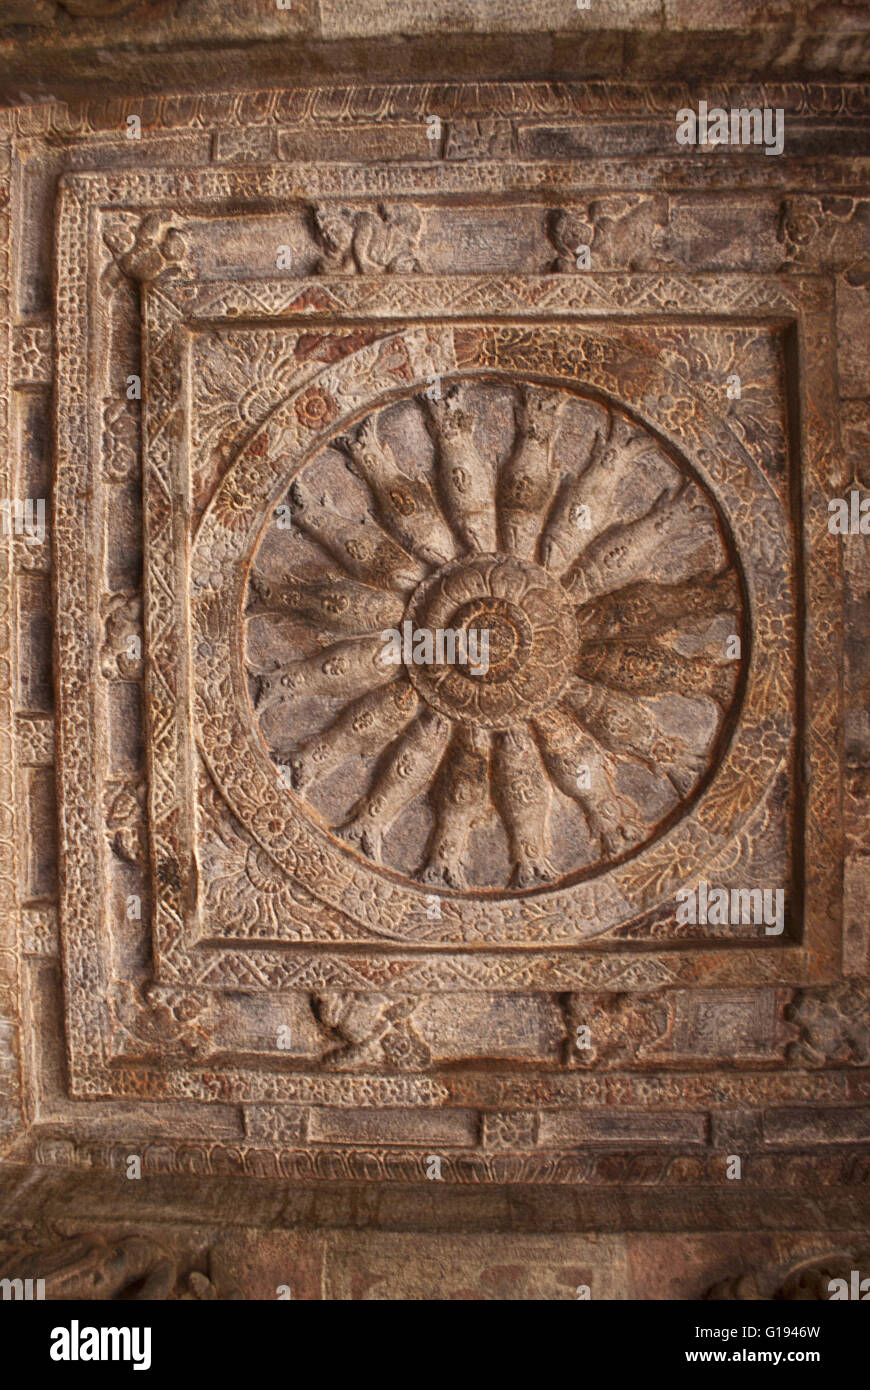 Plafond : 2 cave montrant une roue avec 16 rayons de poissons dans un cadre carré. Les grottes de Badami, Karnataka, Inde. Banque D'Images